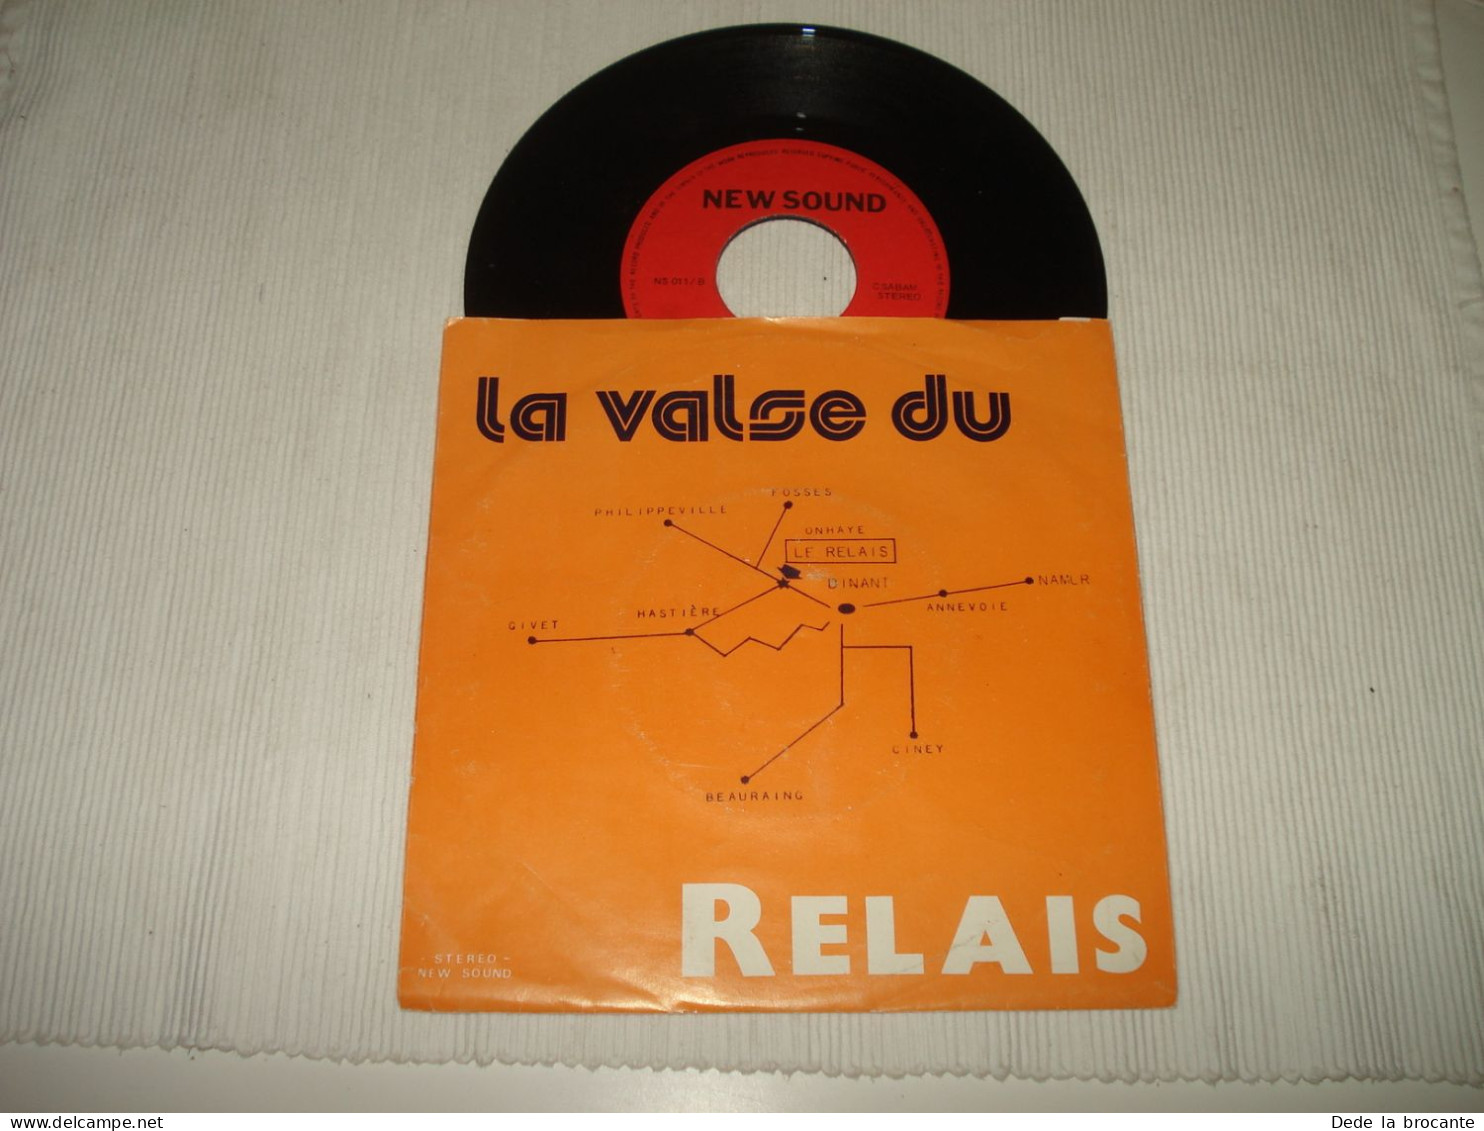 B14 / DEDICACE - Marcel Nihoul – La Valse Du Relais – NS 011 - BE 19??  VG+/EX - Disco, Pop